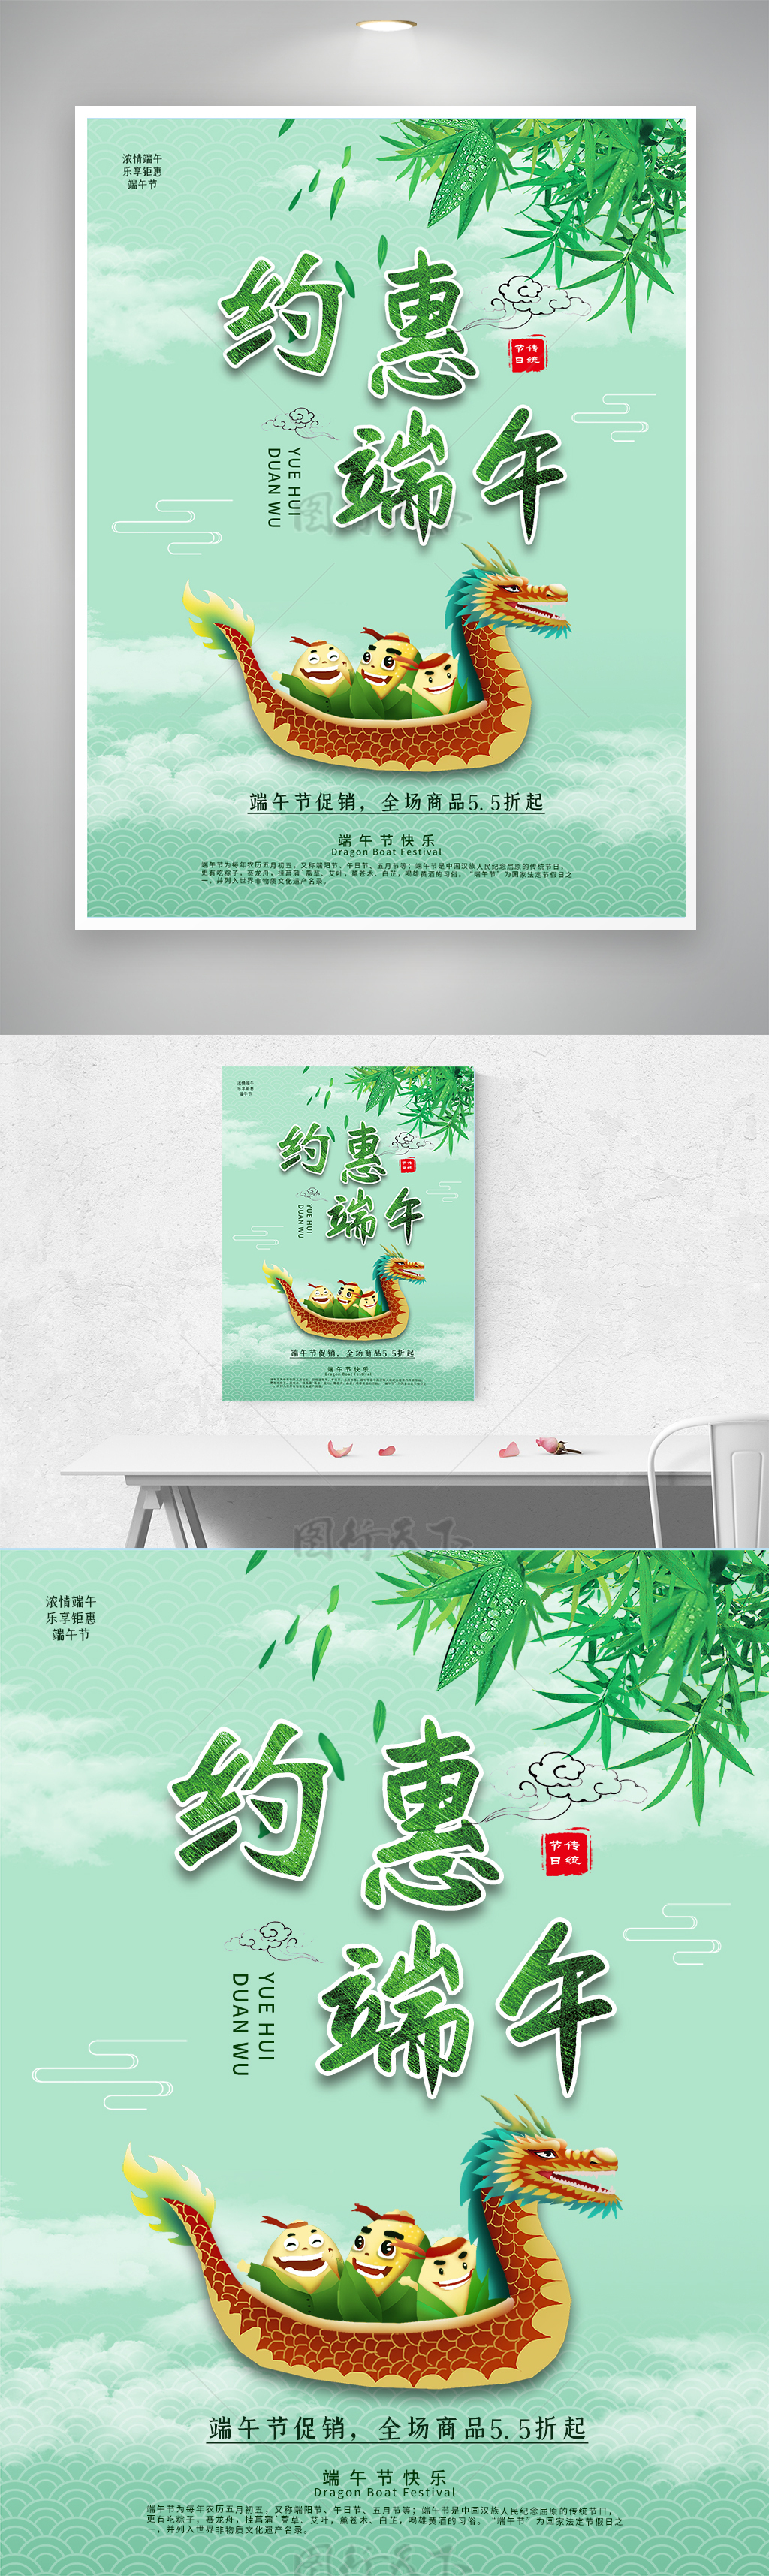 中国风约惠端午节传统节日促销活动创意海报